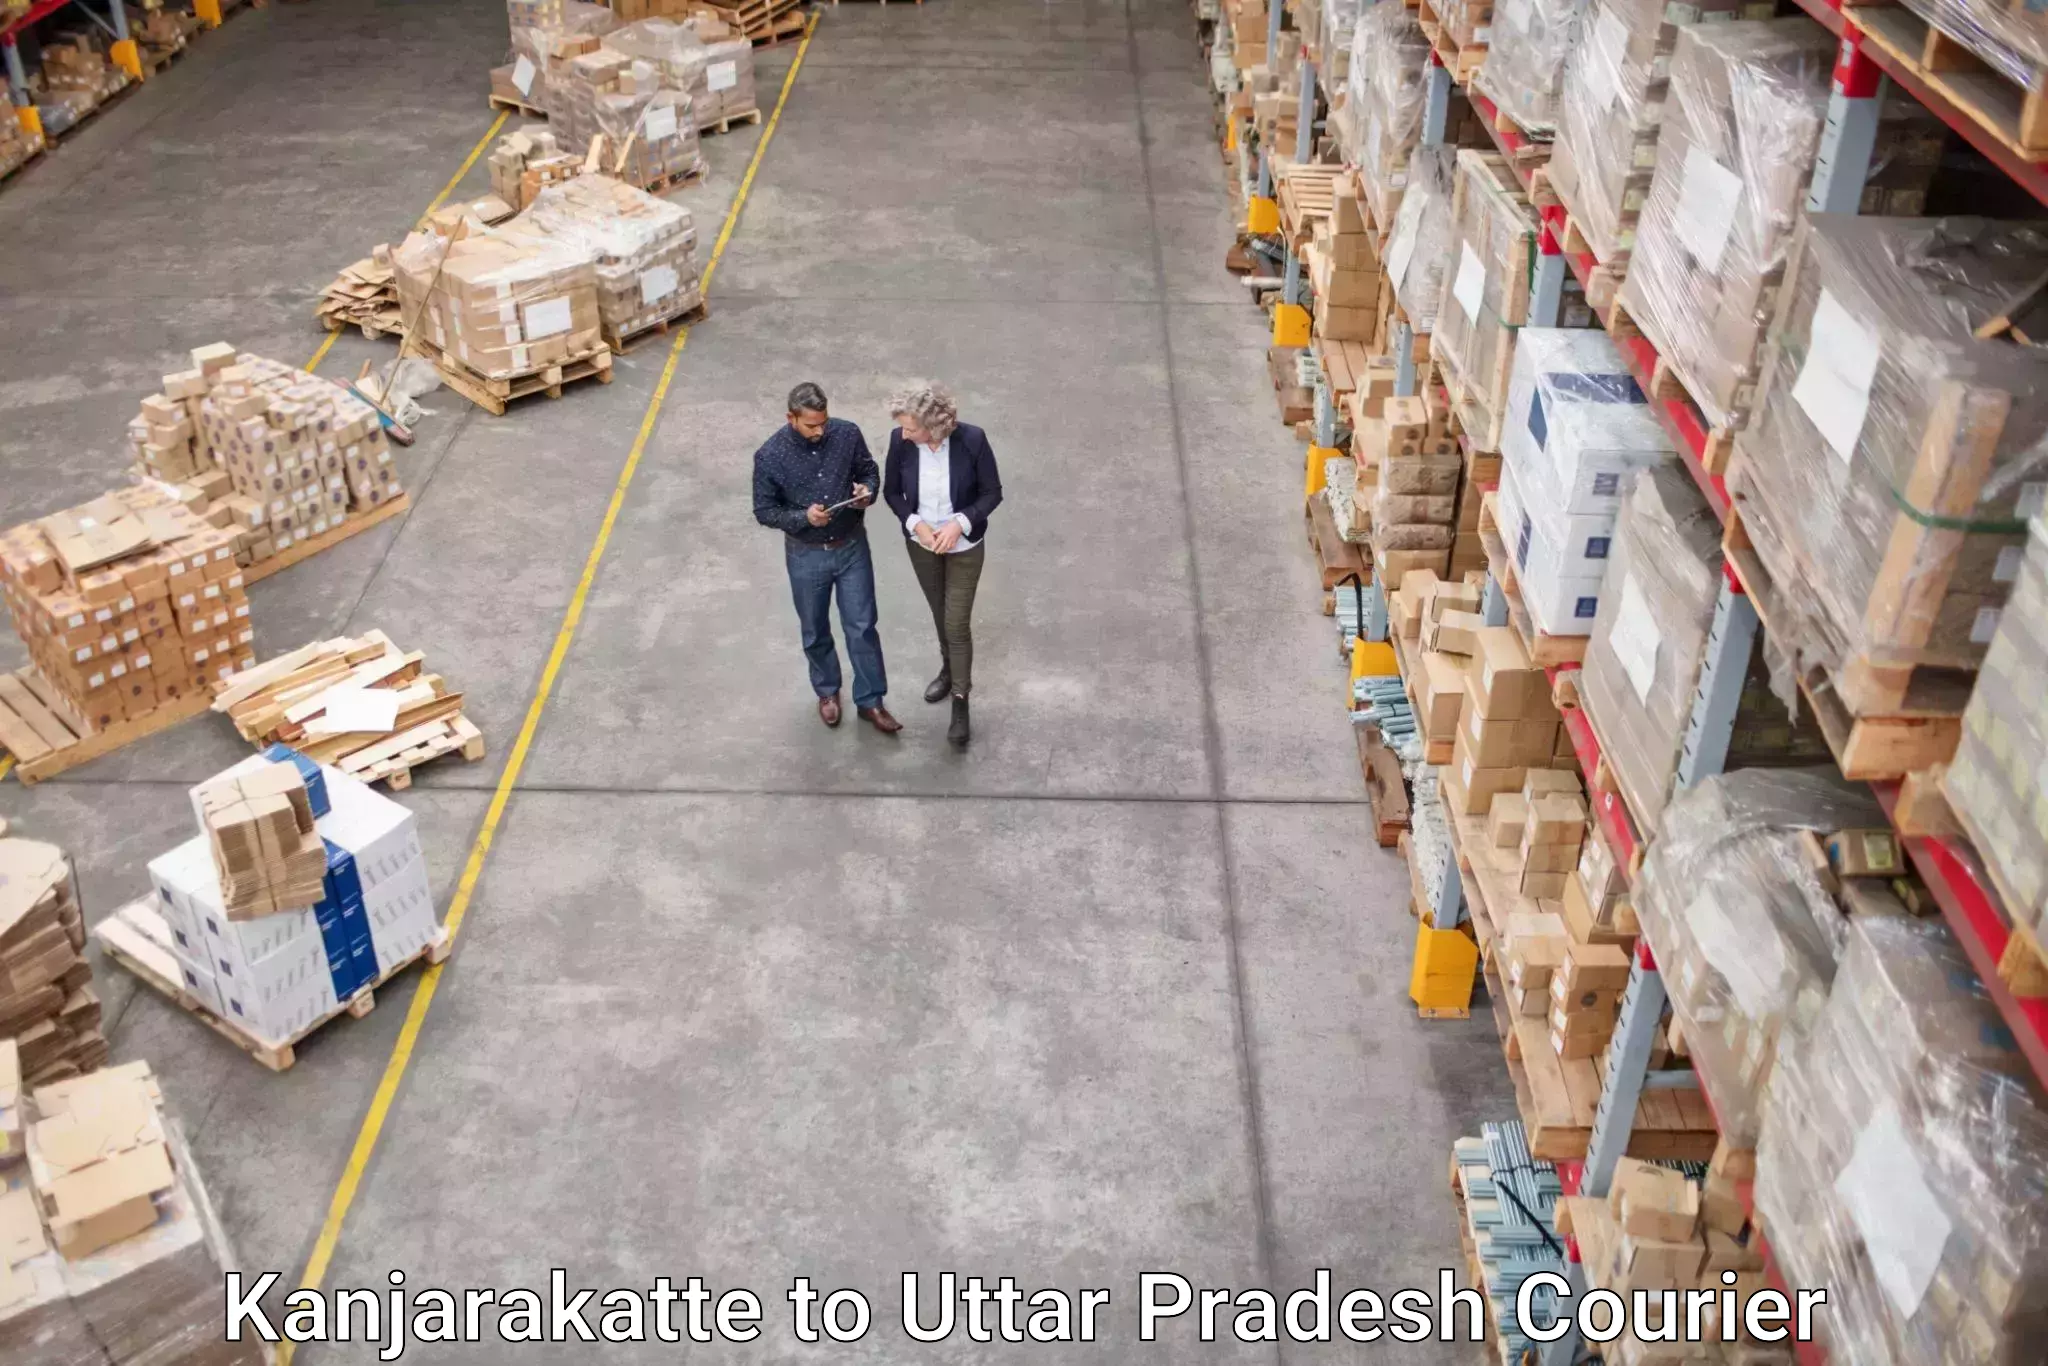 Global courier networks Kanjarakatte to Uttar Pradesh